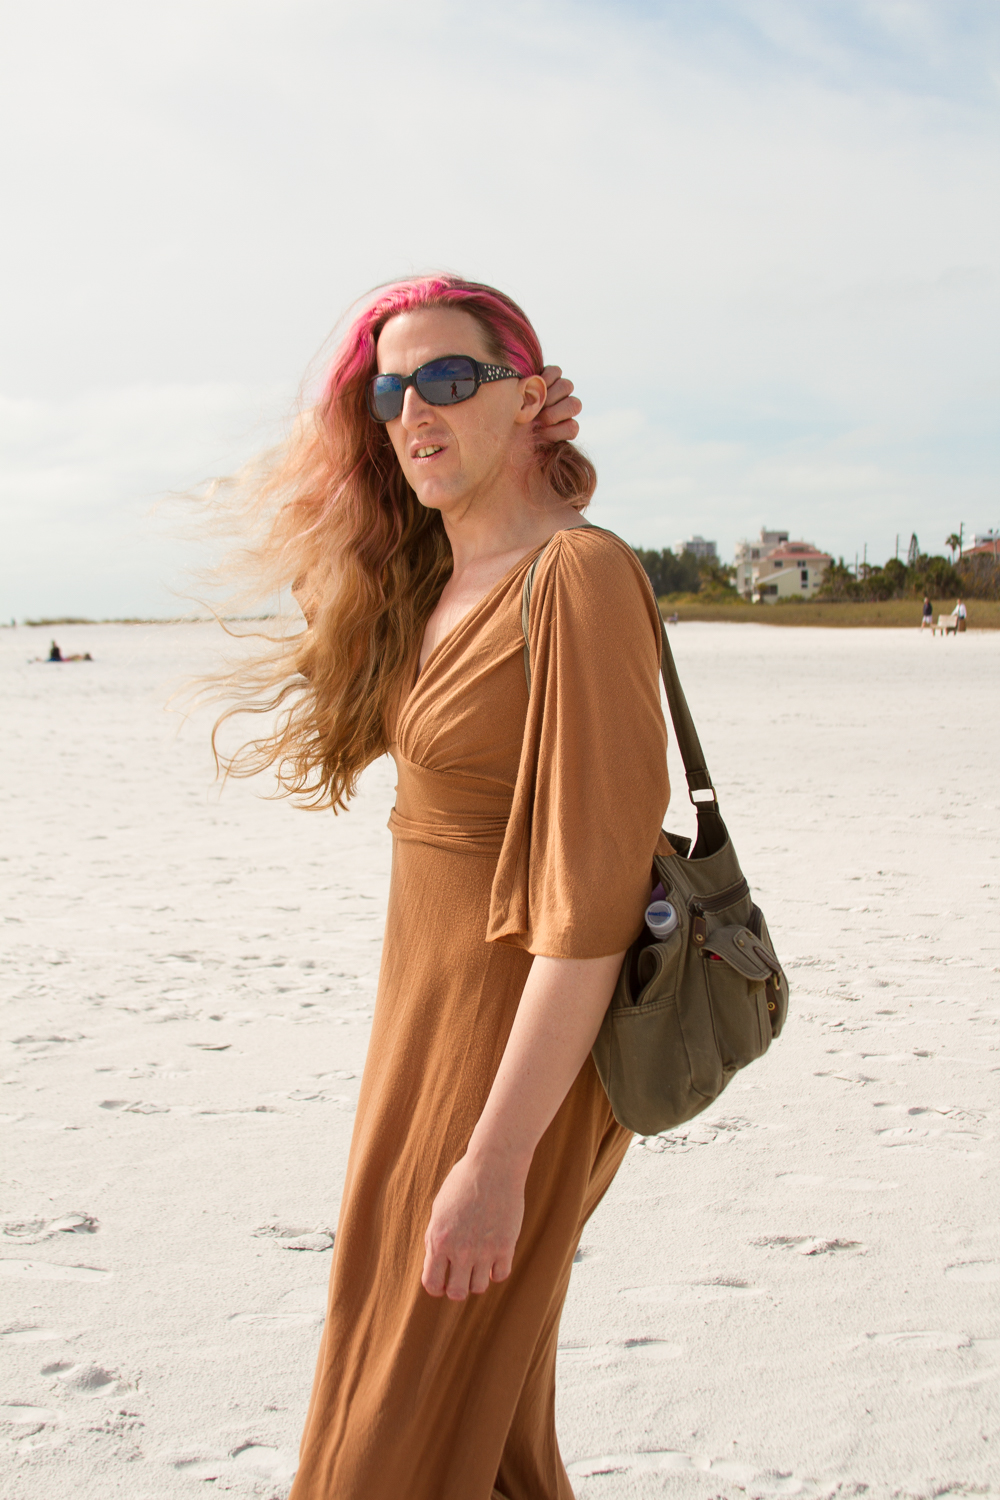  Lorelei, on the beach / 2013 